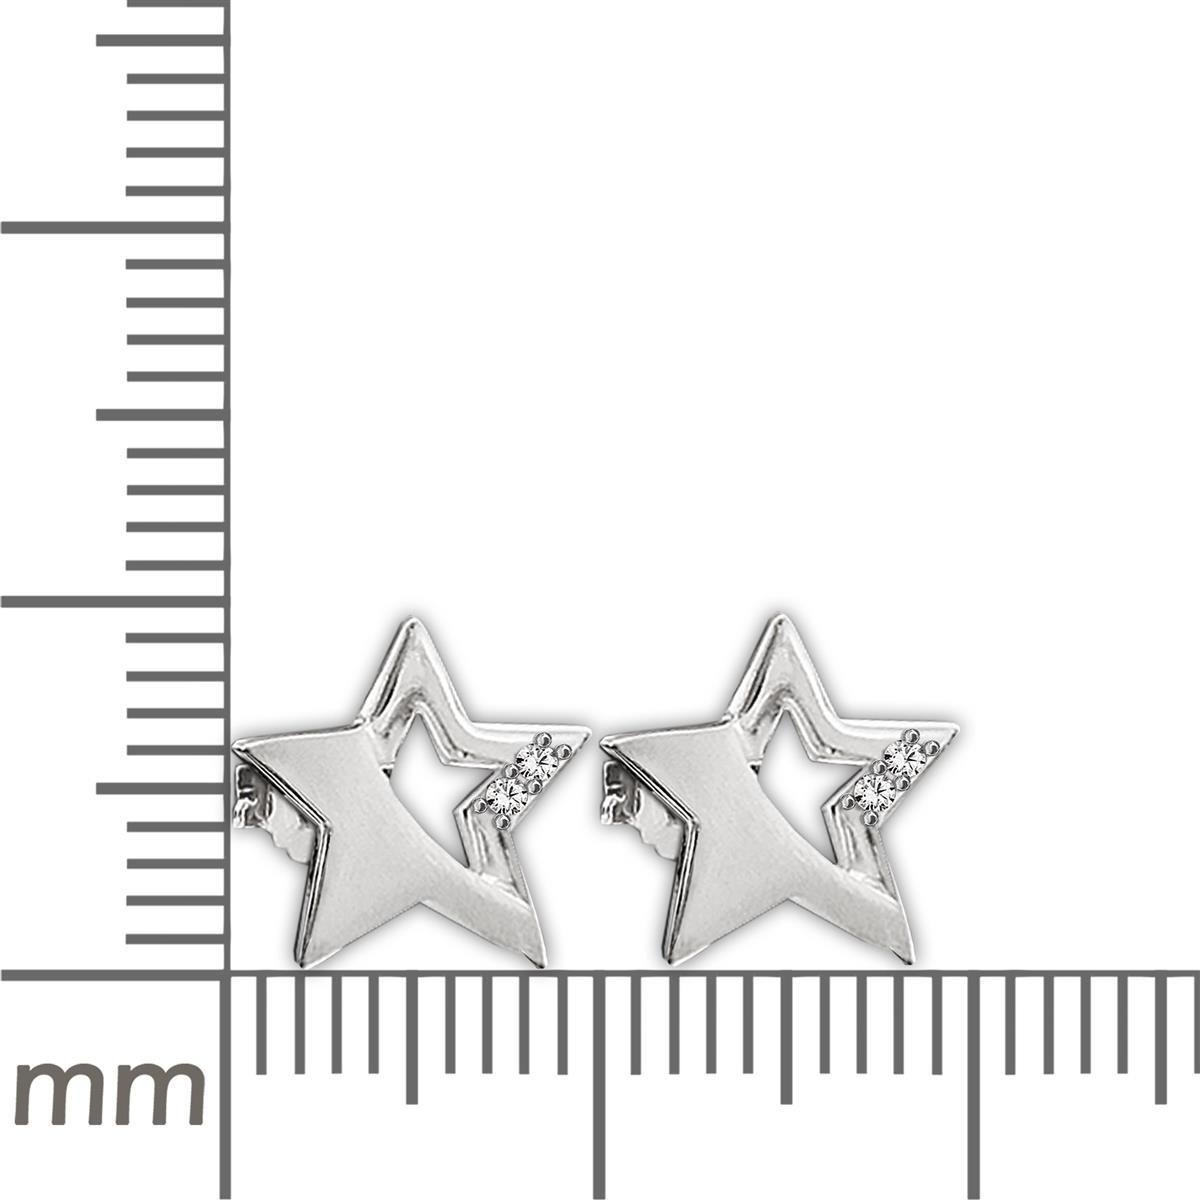 Silberne Ohrstecker Stern 9 mm matt und glänzend, teils offen mit 2 Zirkonias STERLING SILBER 925